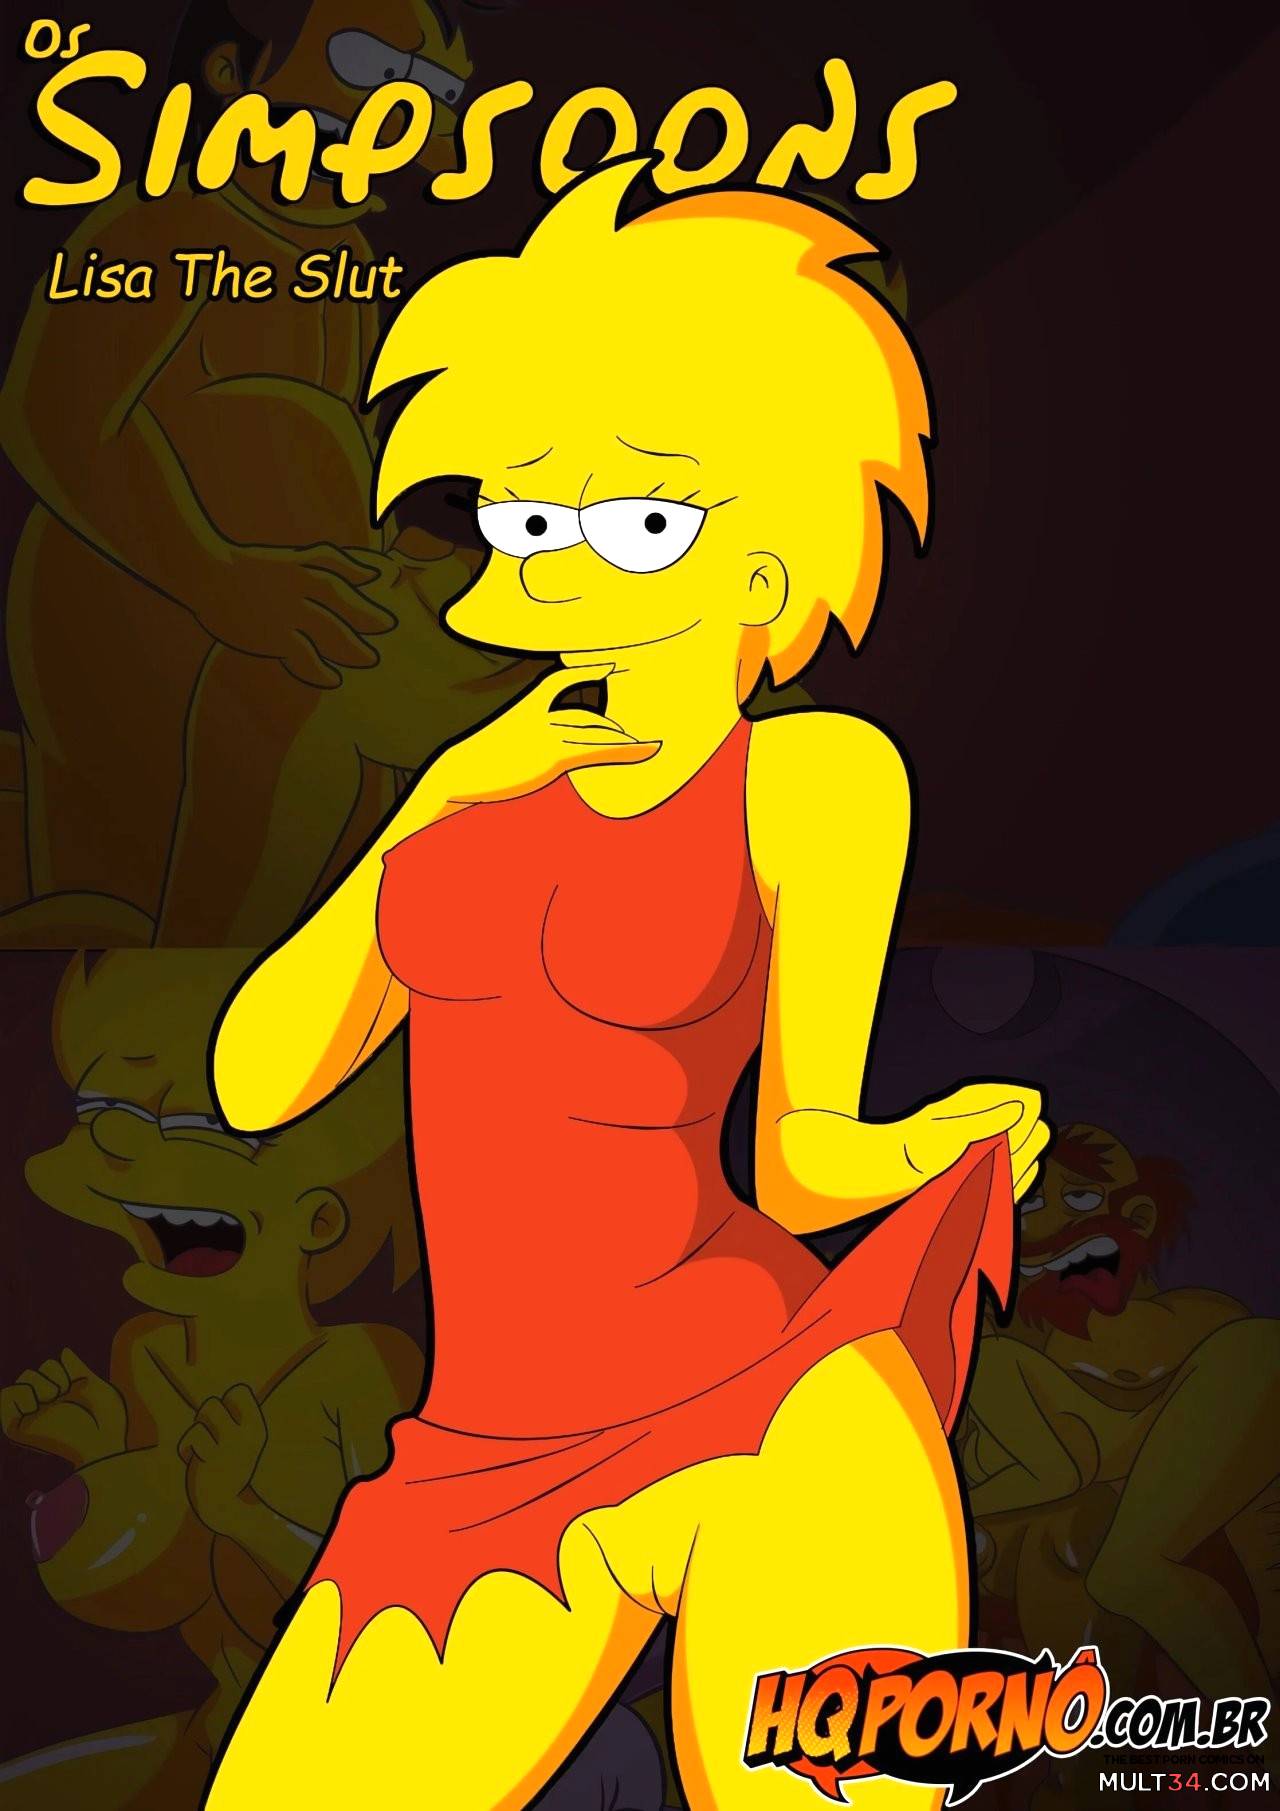 Bart Lisa Simpson Cartoon Porn - OS Simpsons 3- Lisa The Slut porn comic - the best cartoon porn comics,  Rule 34 | MULT34